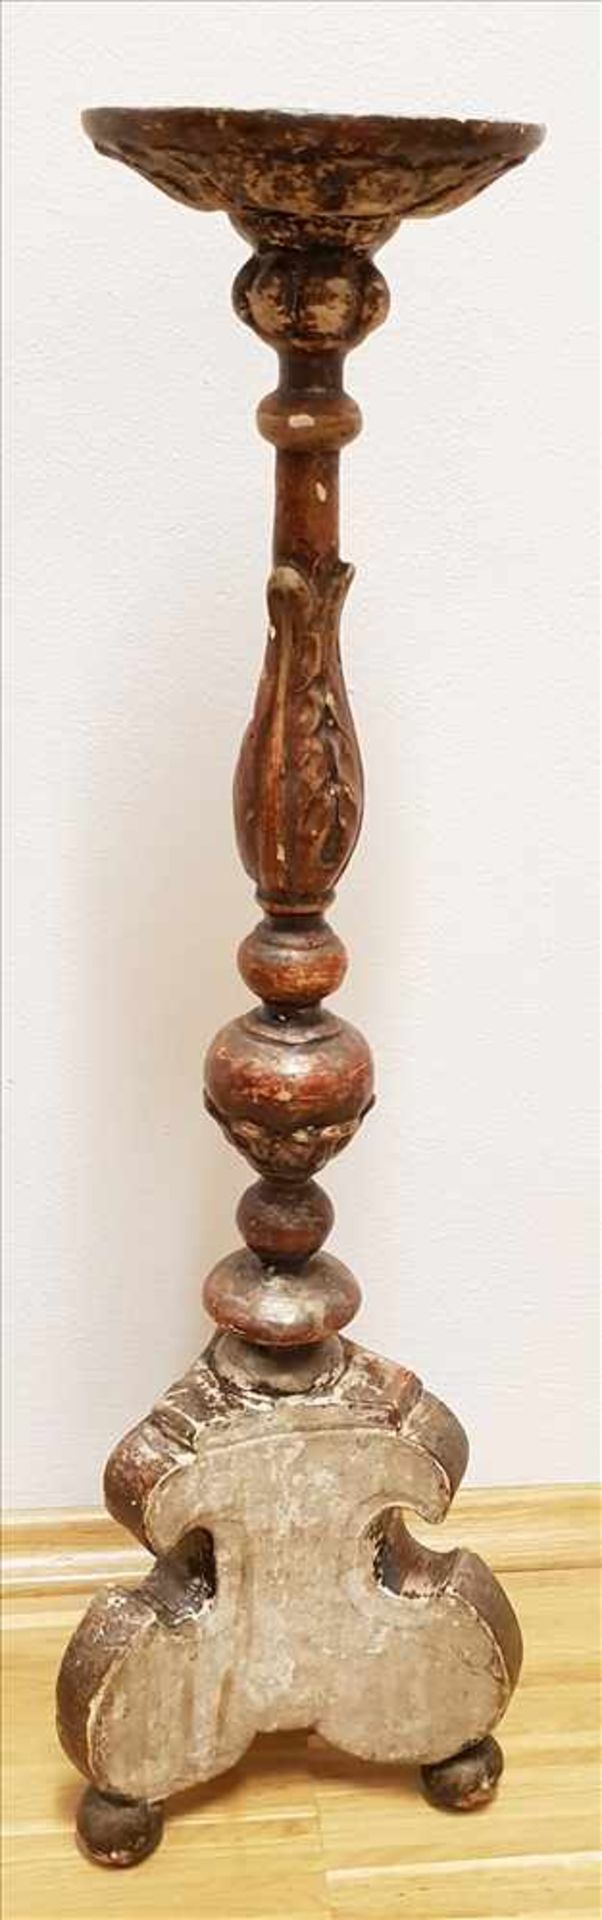 Barocker Leuchter 18. Jh.,aus Holz geschnitzt, polychrom gefasst, Höhe ca. 57,5 cm, - Bild 2 aus 2